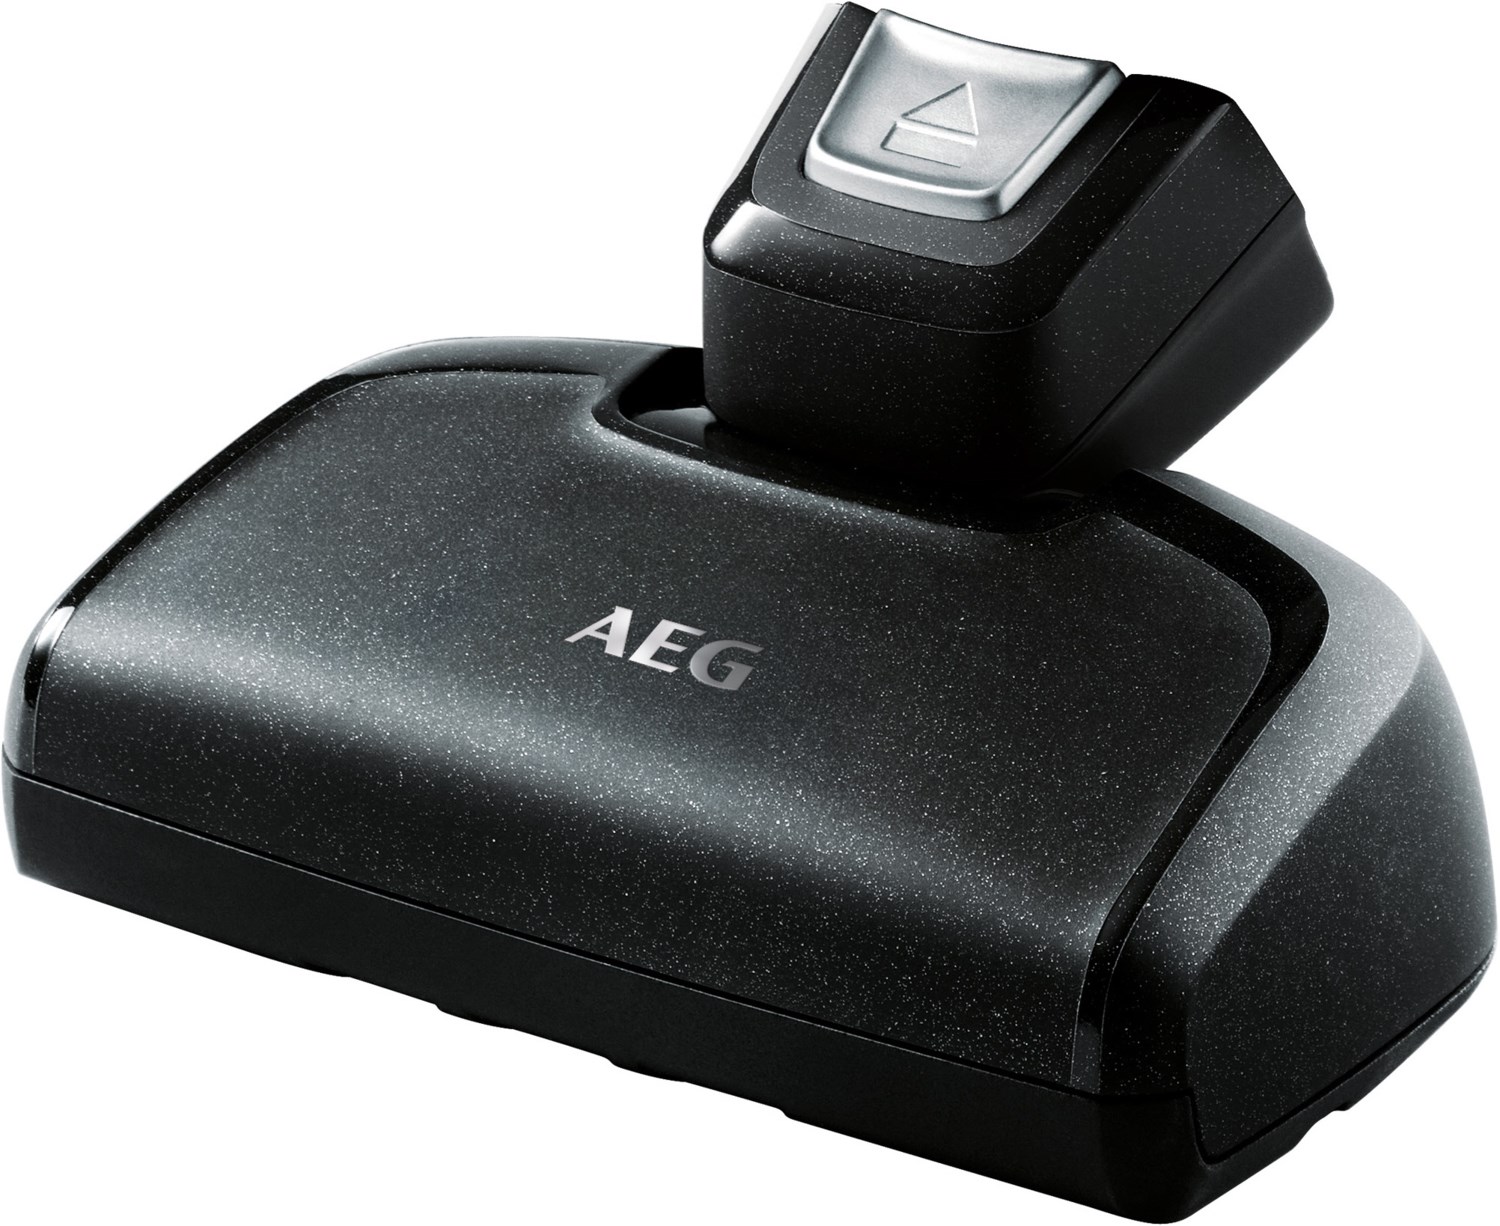 AEG AZE134 Elektrosaugbürste für Handteil des CX7-2 und QX8 schwarz